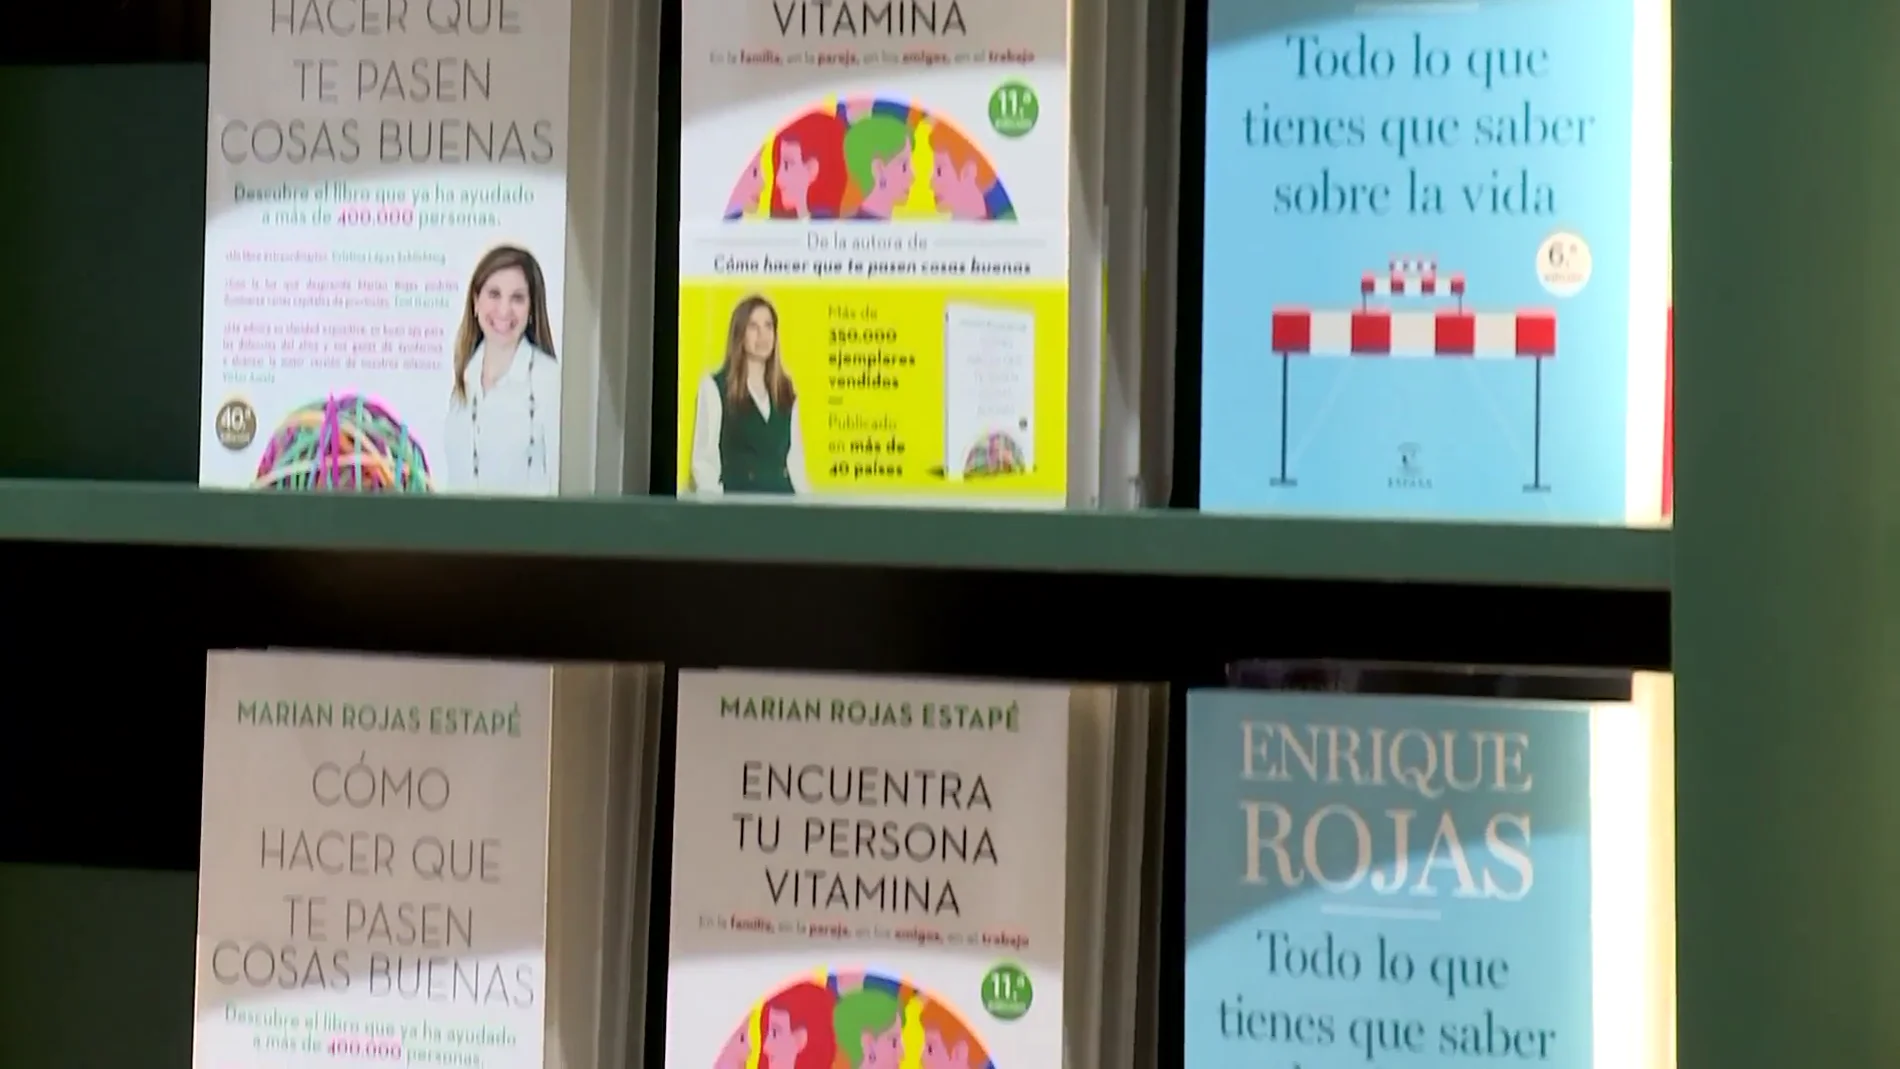 Los libros del doctor Enrique Rojas y su hija, consejos sobre la